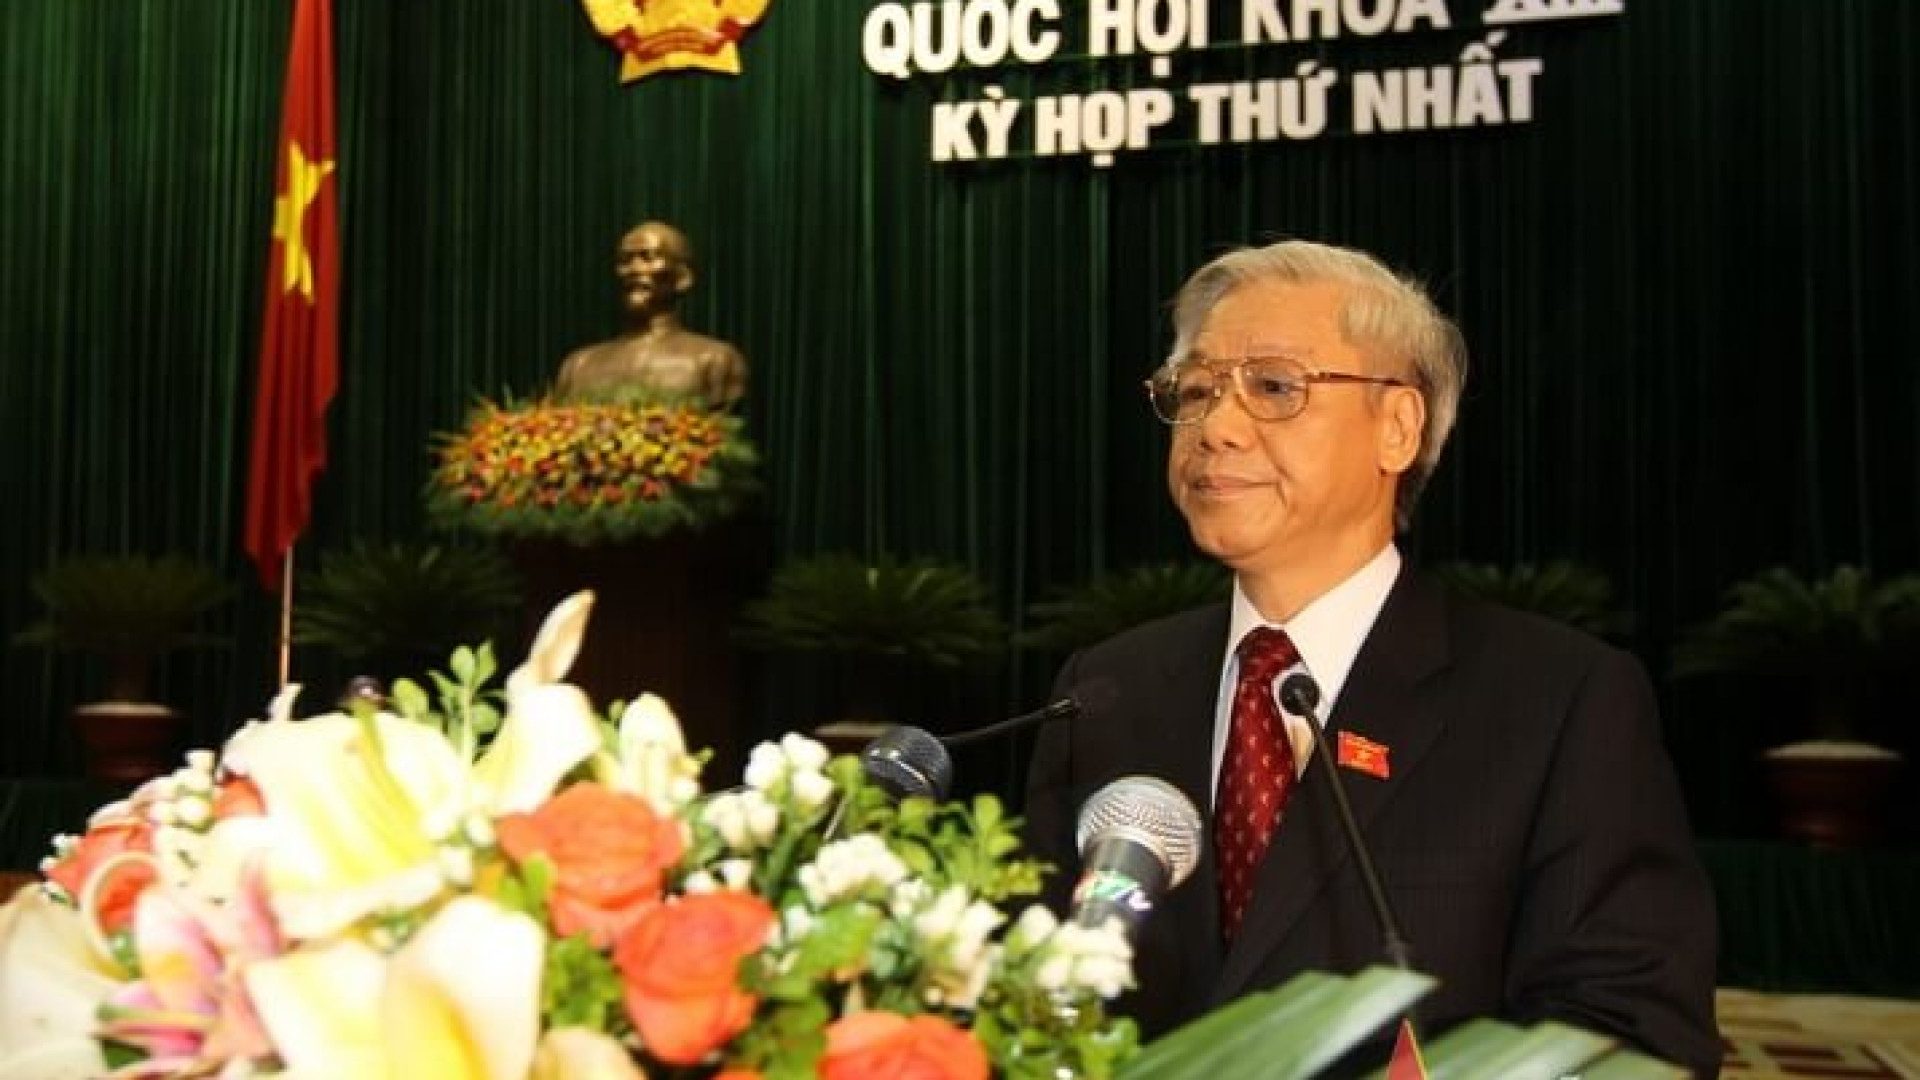 Dấu ấn của đồng chí Nguyễn Phú Trọng trong việc xây dựng Hiến pháp năm 2013